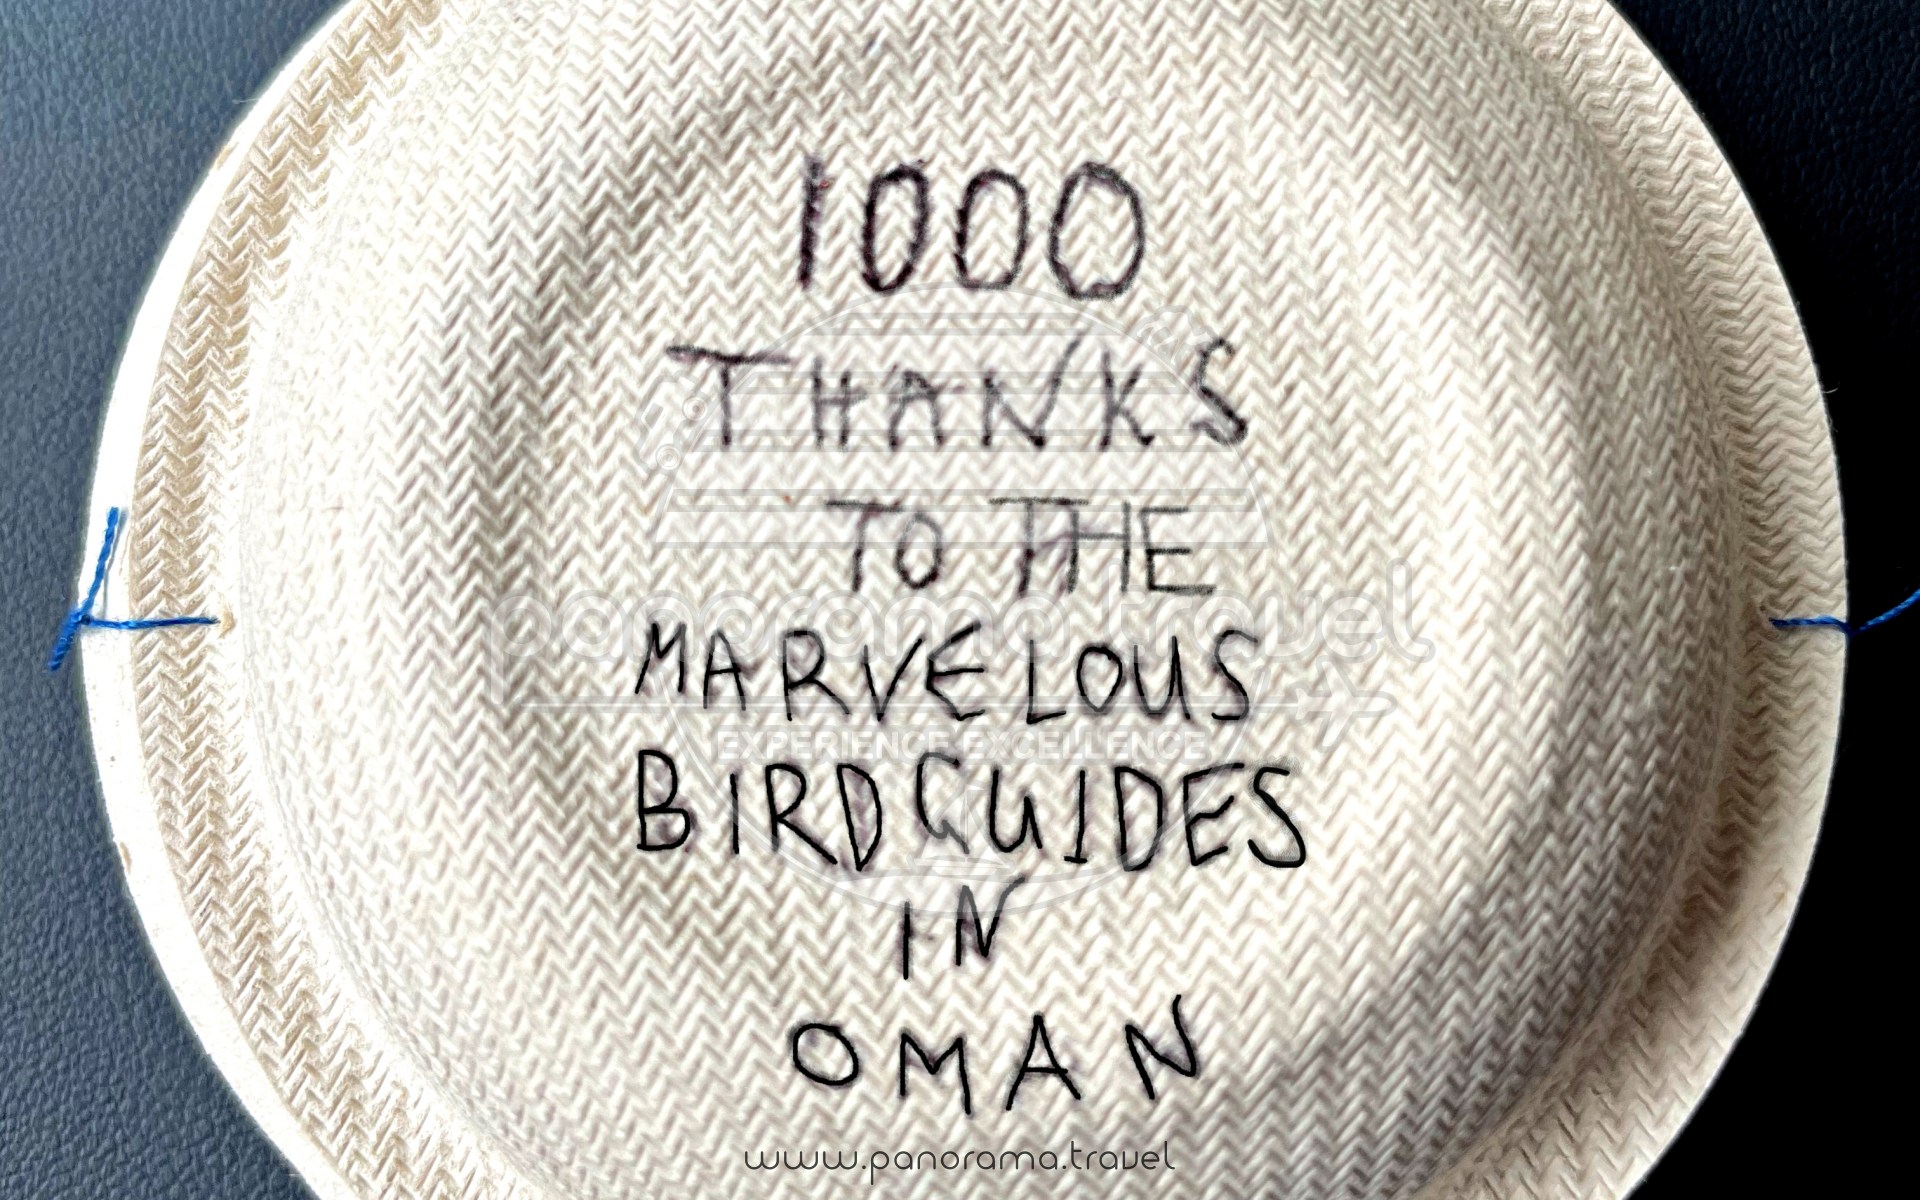 Oman Bird Watching Tours 11